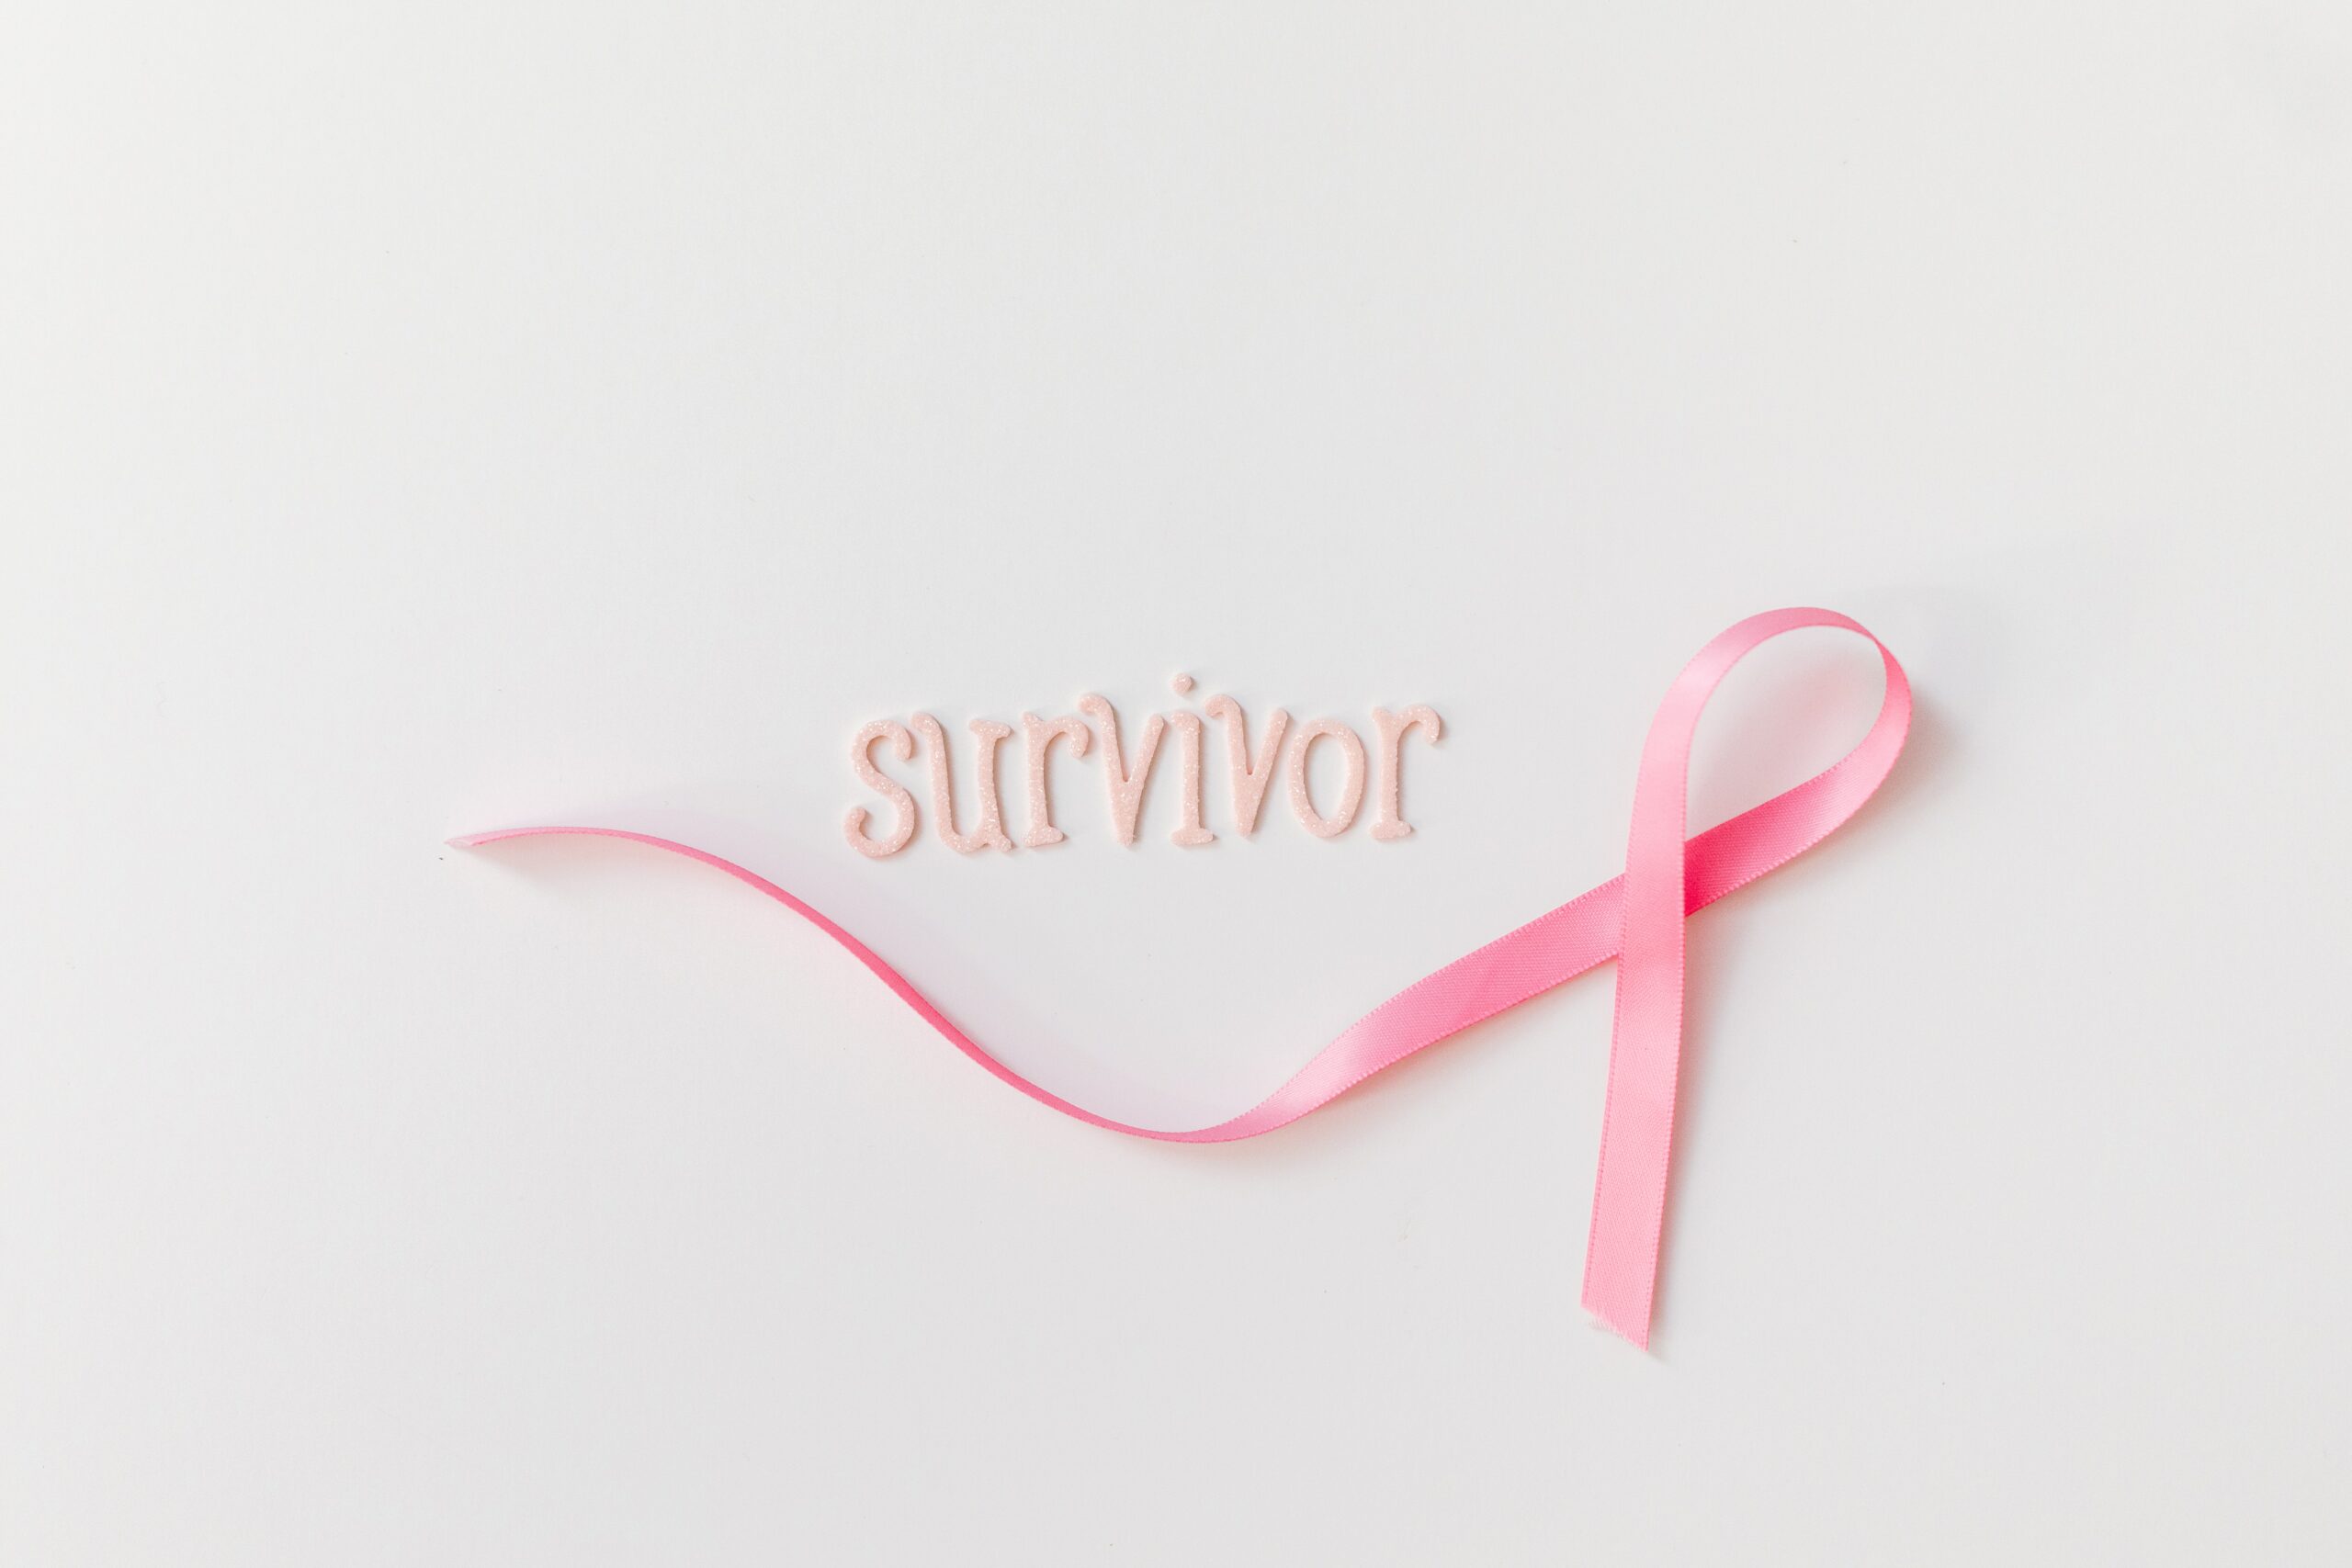 cancer survivor